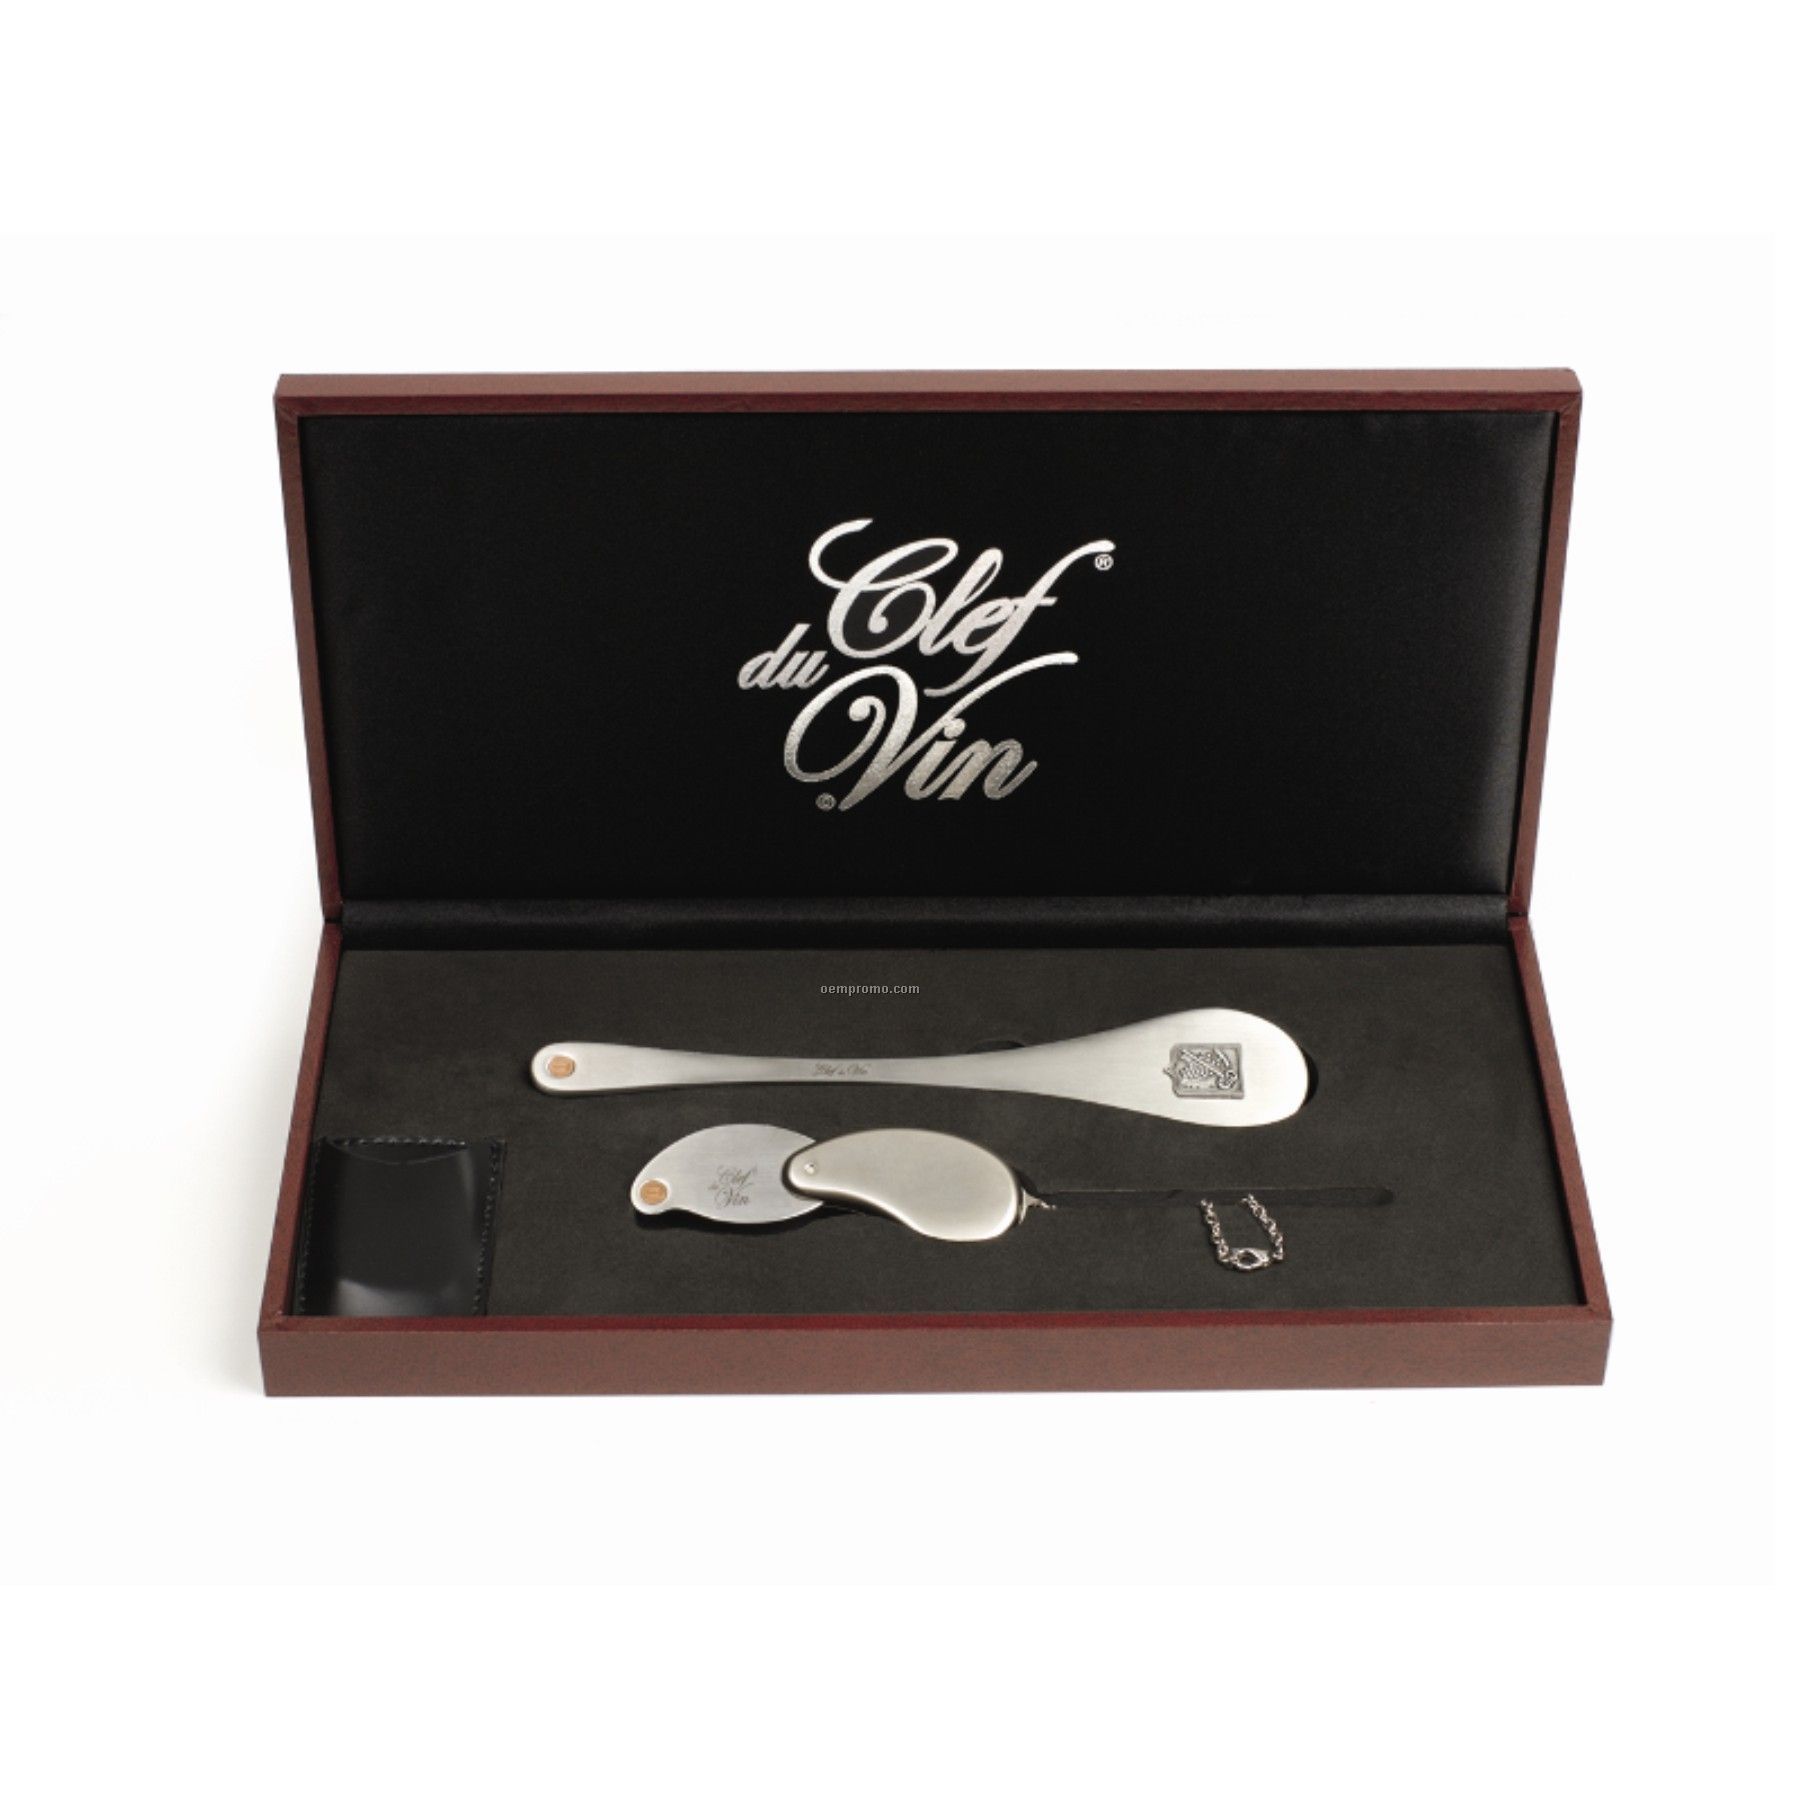 Clef Du Vin Standard Set In Burgundy Gift Box (Laser Engraved)